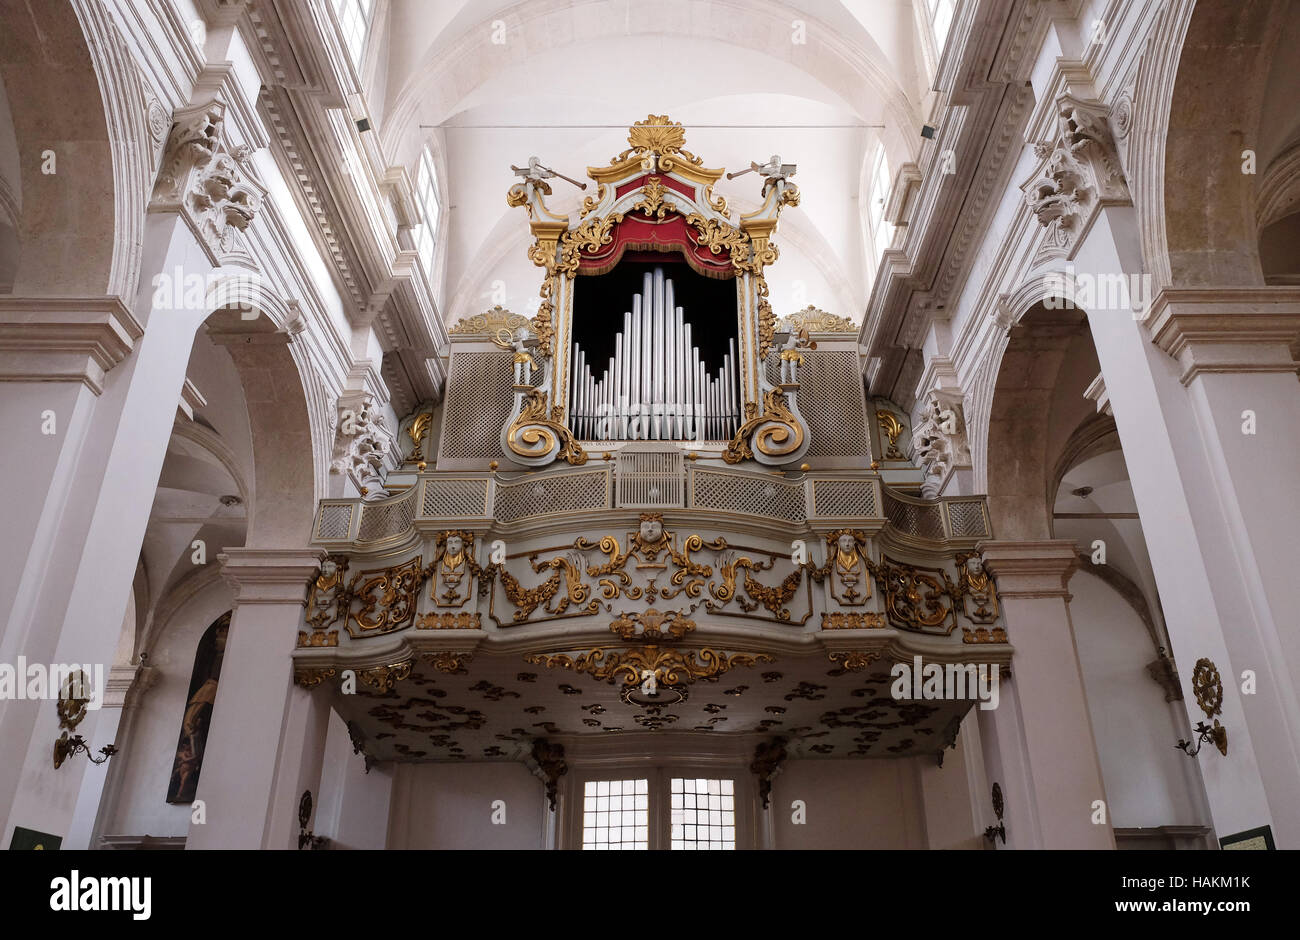 Vieil orgue majestueux dans la cathédrale de Dubrovnik, Croatie le 01 décembre 2015. Banque D'Images